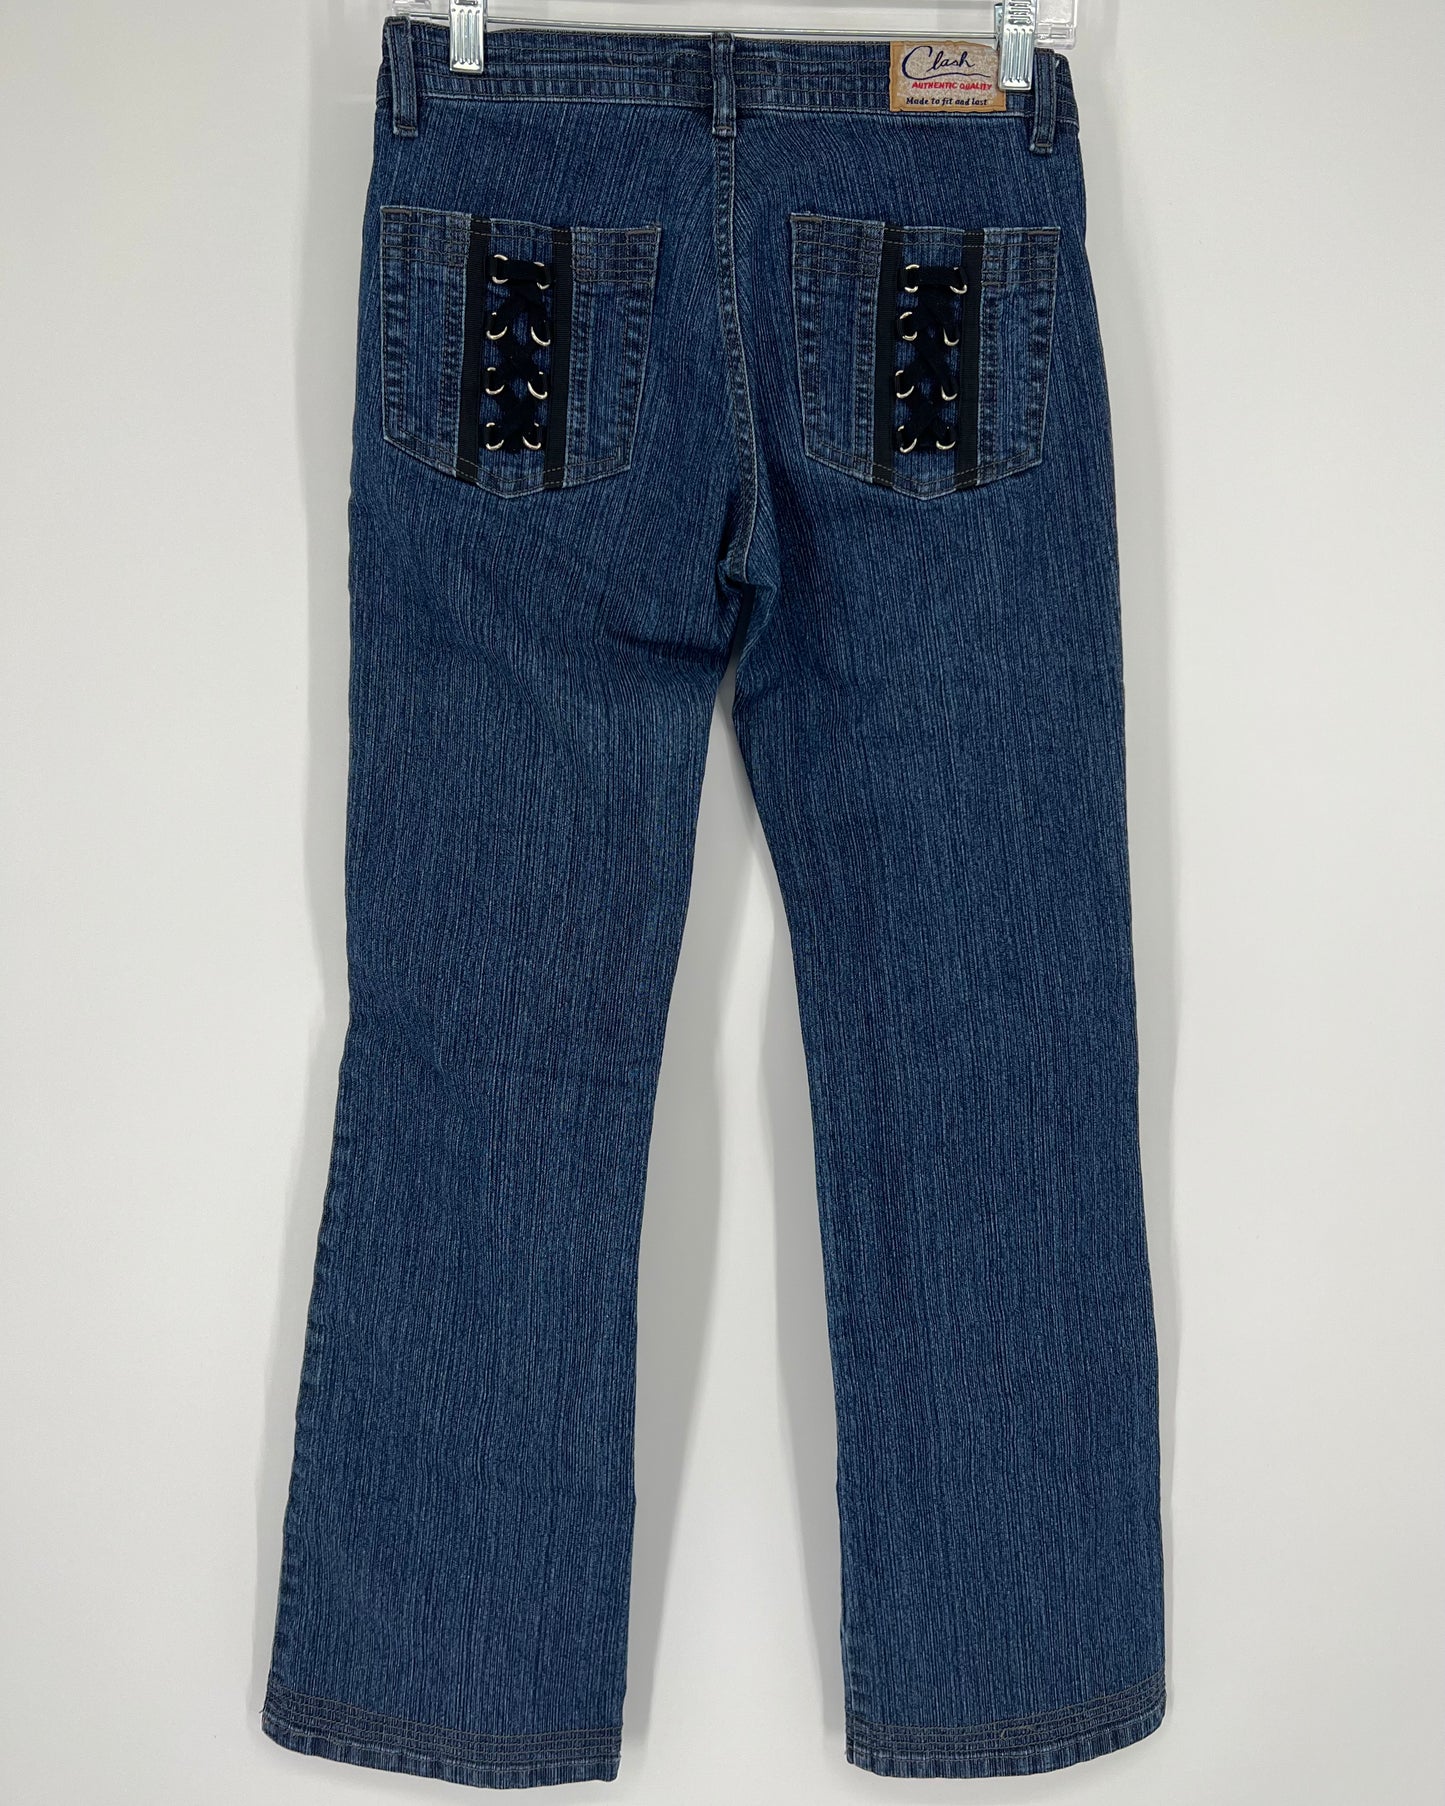 Vintage 90s Y2K Clash Lace Up Grunge Bootcut Jeans Sz: 5